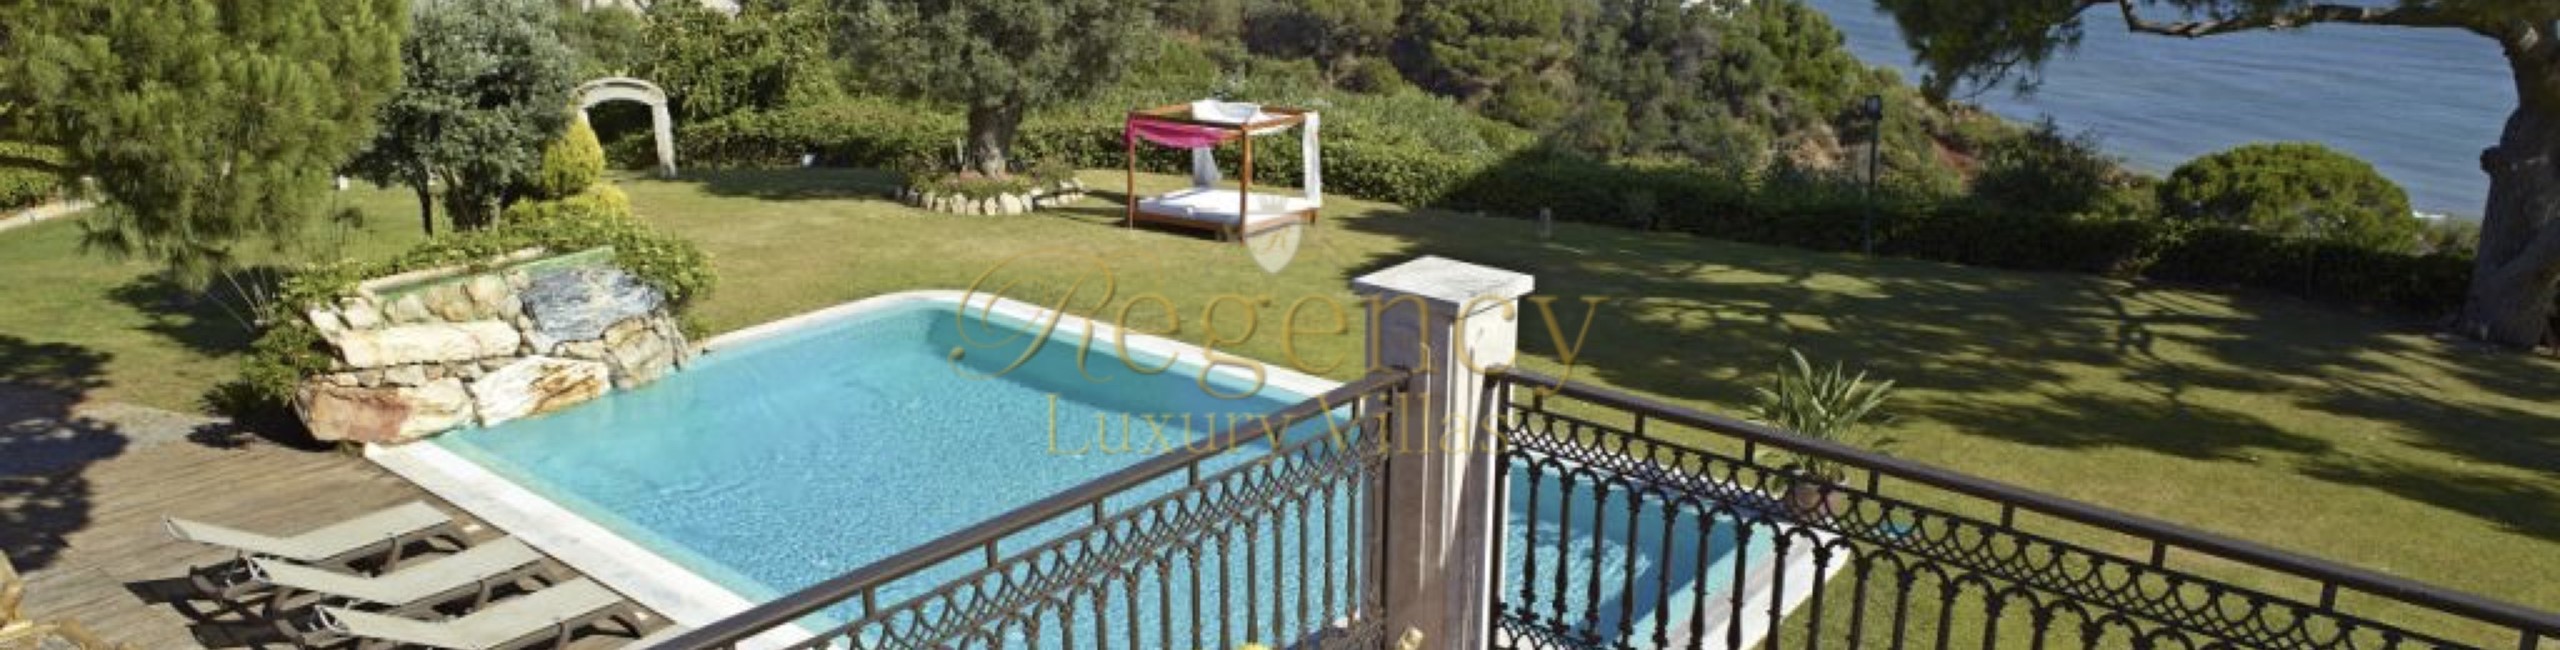 Luxury Villa To Rent In The Algarve Pool